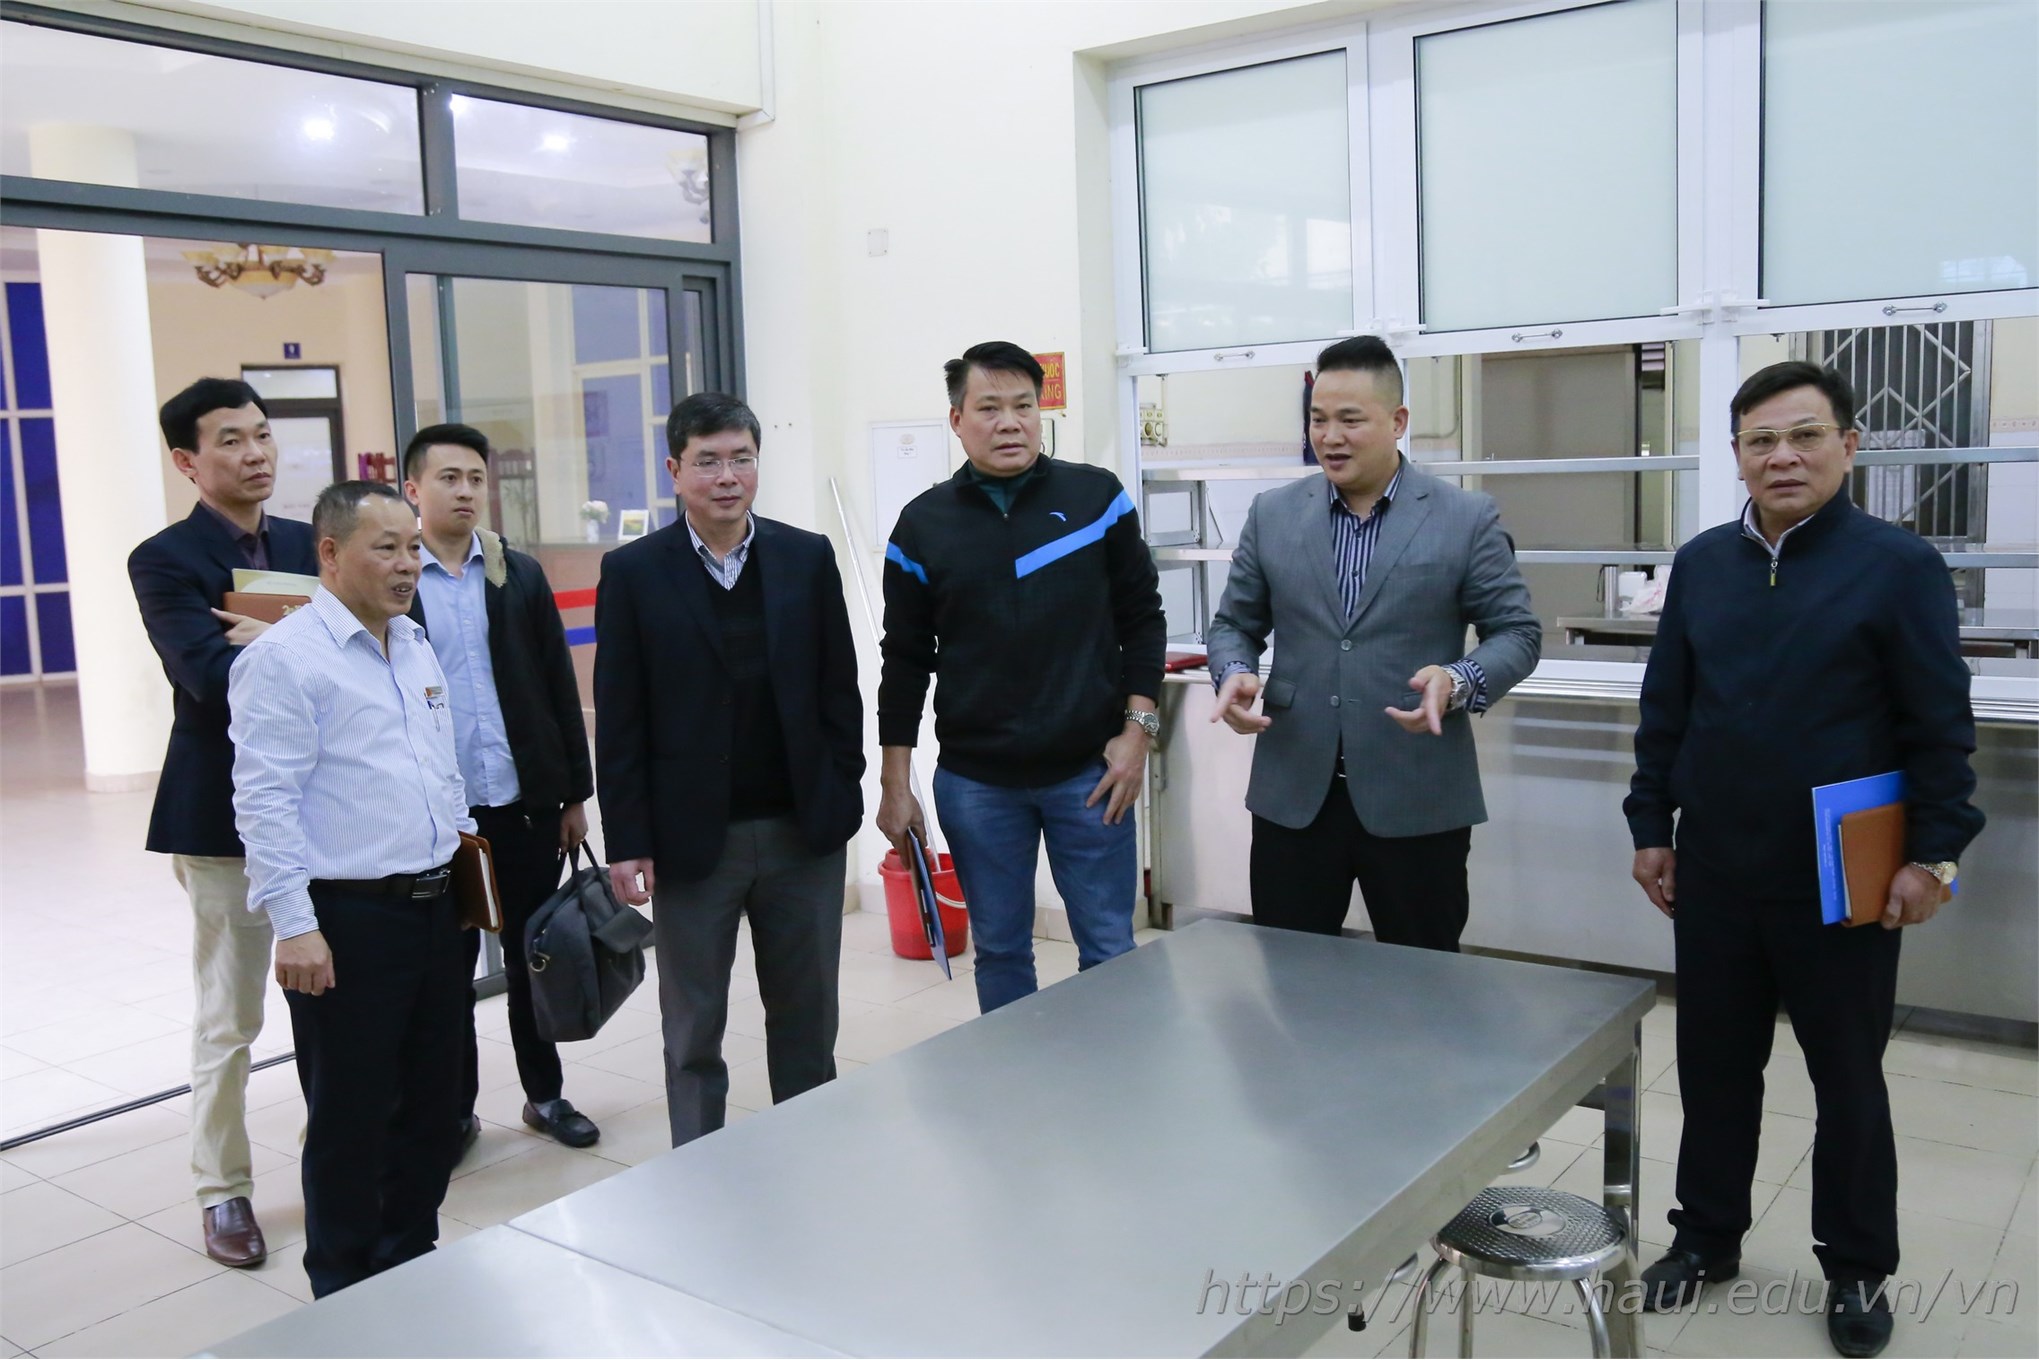 Đoàn cán bộ Học viện Chính sách và Phát triển thăm và làm việc tại Đại học Công nghiệp Hà Nội